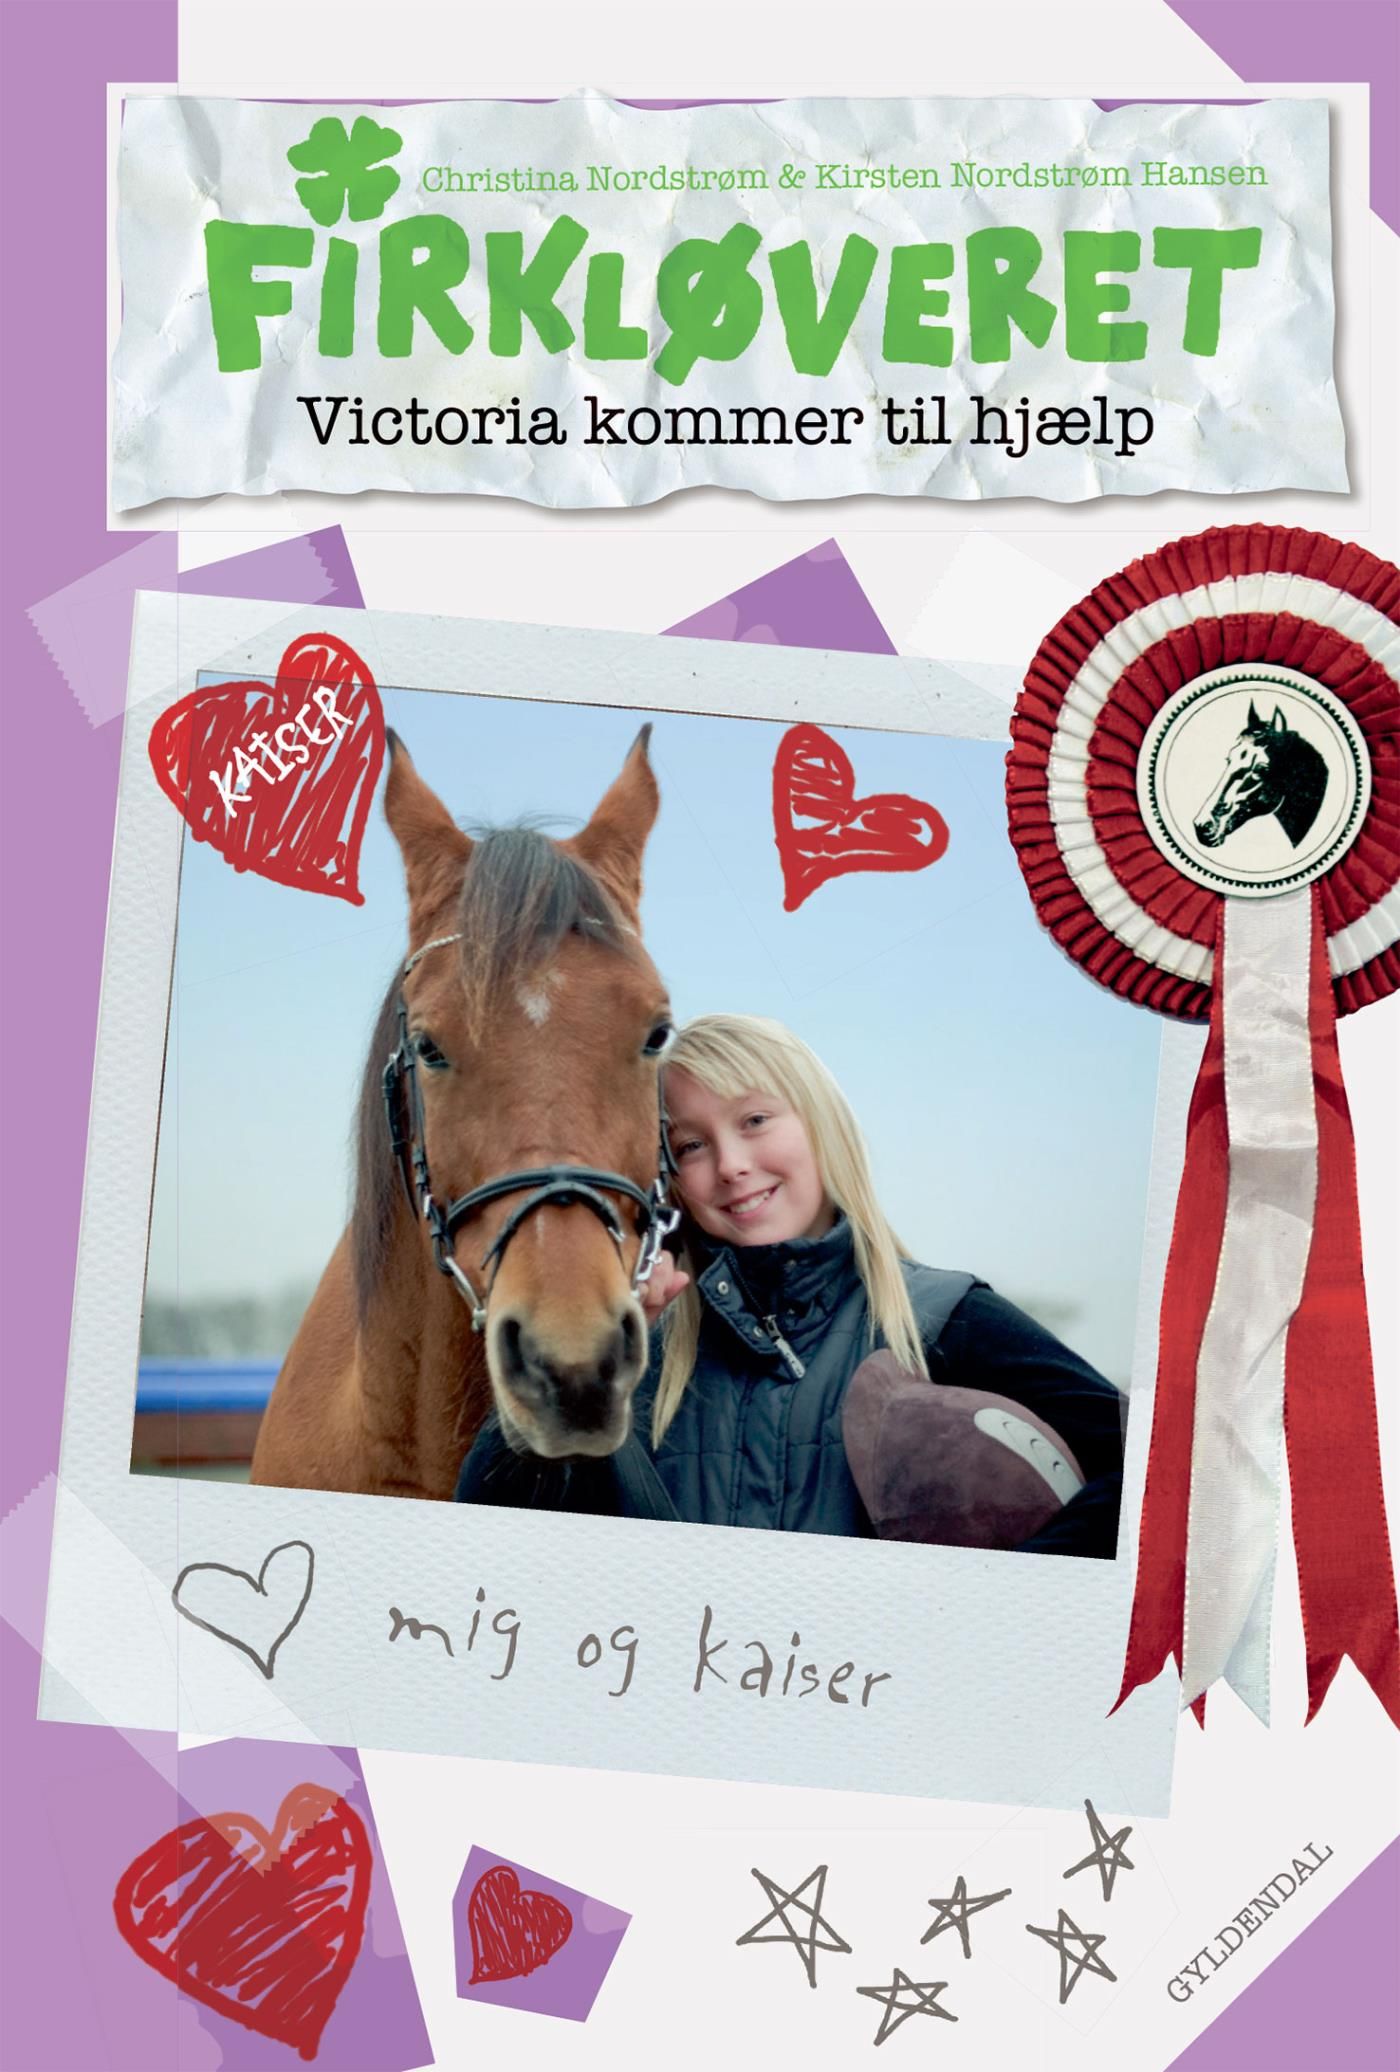 Firkløveret 1 - Victoria kommer til hjælp, e-bok av Kirsten Nordstrøm Hansen, Christina Nordstrøm